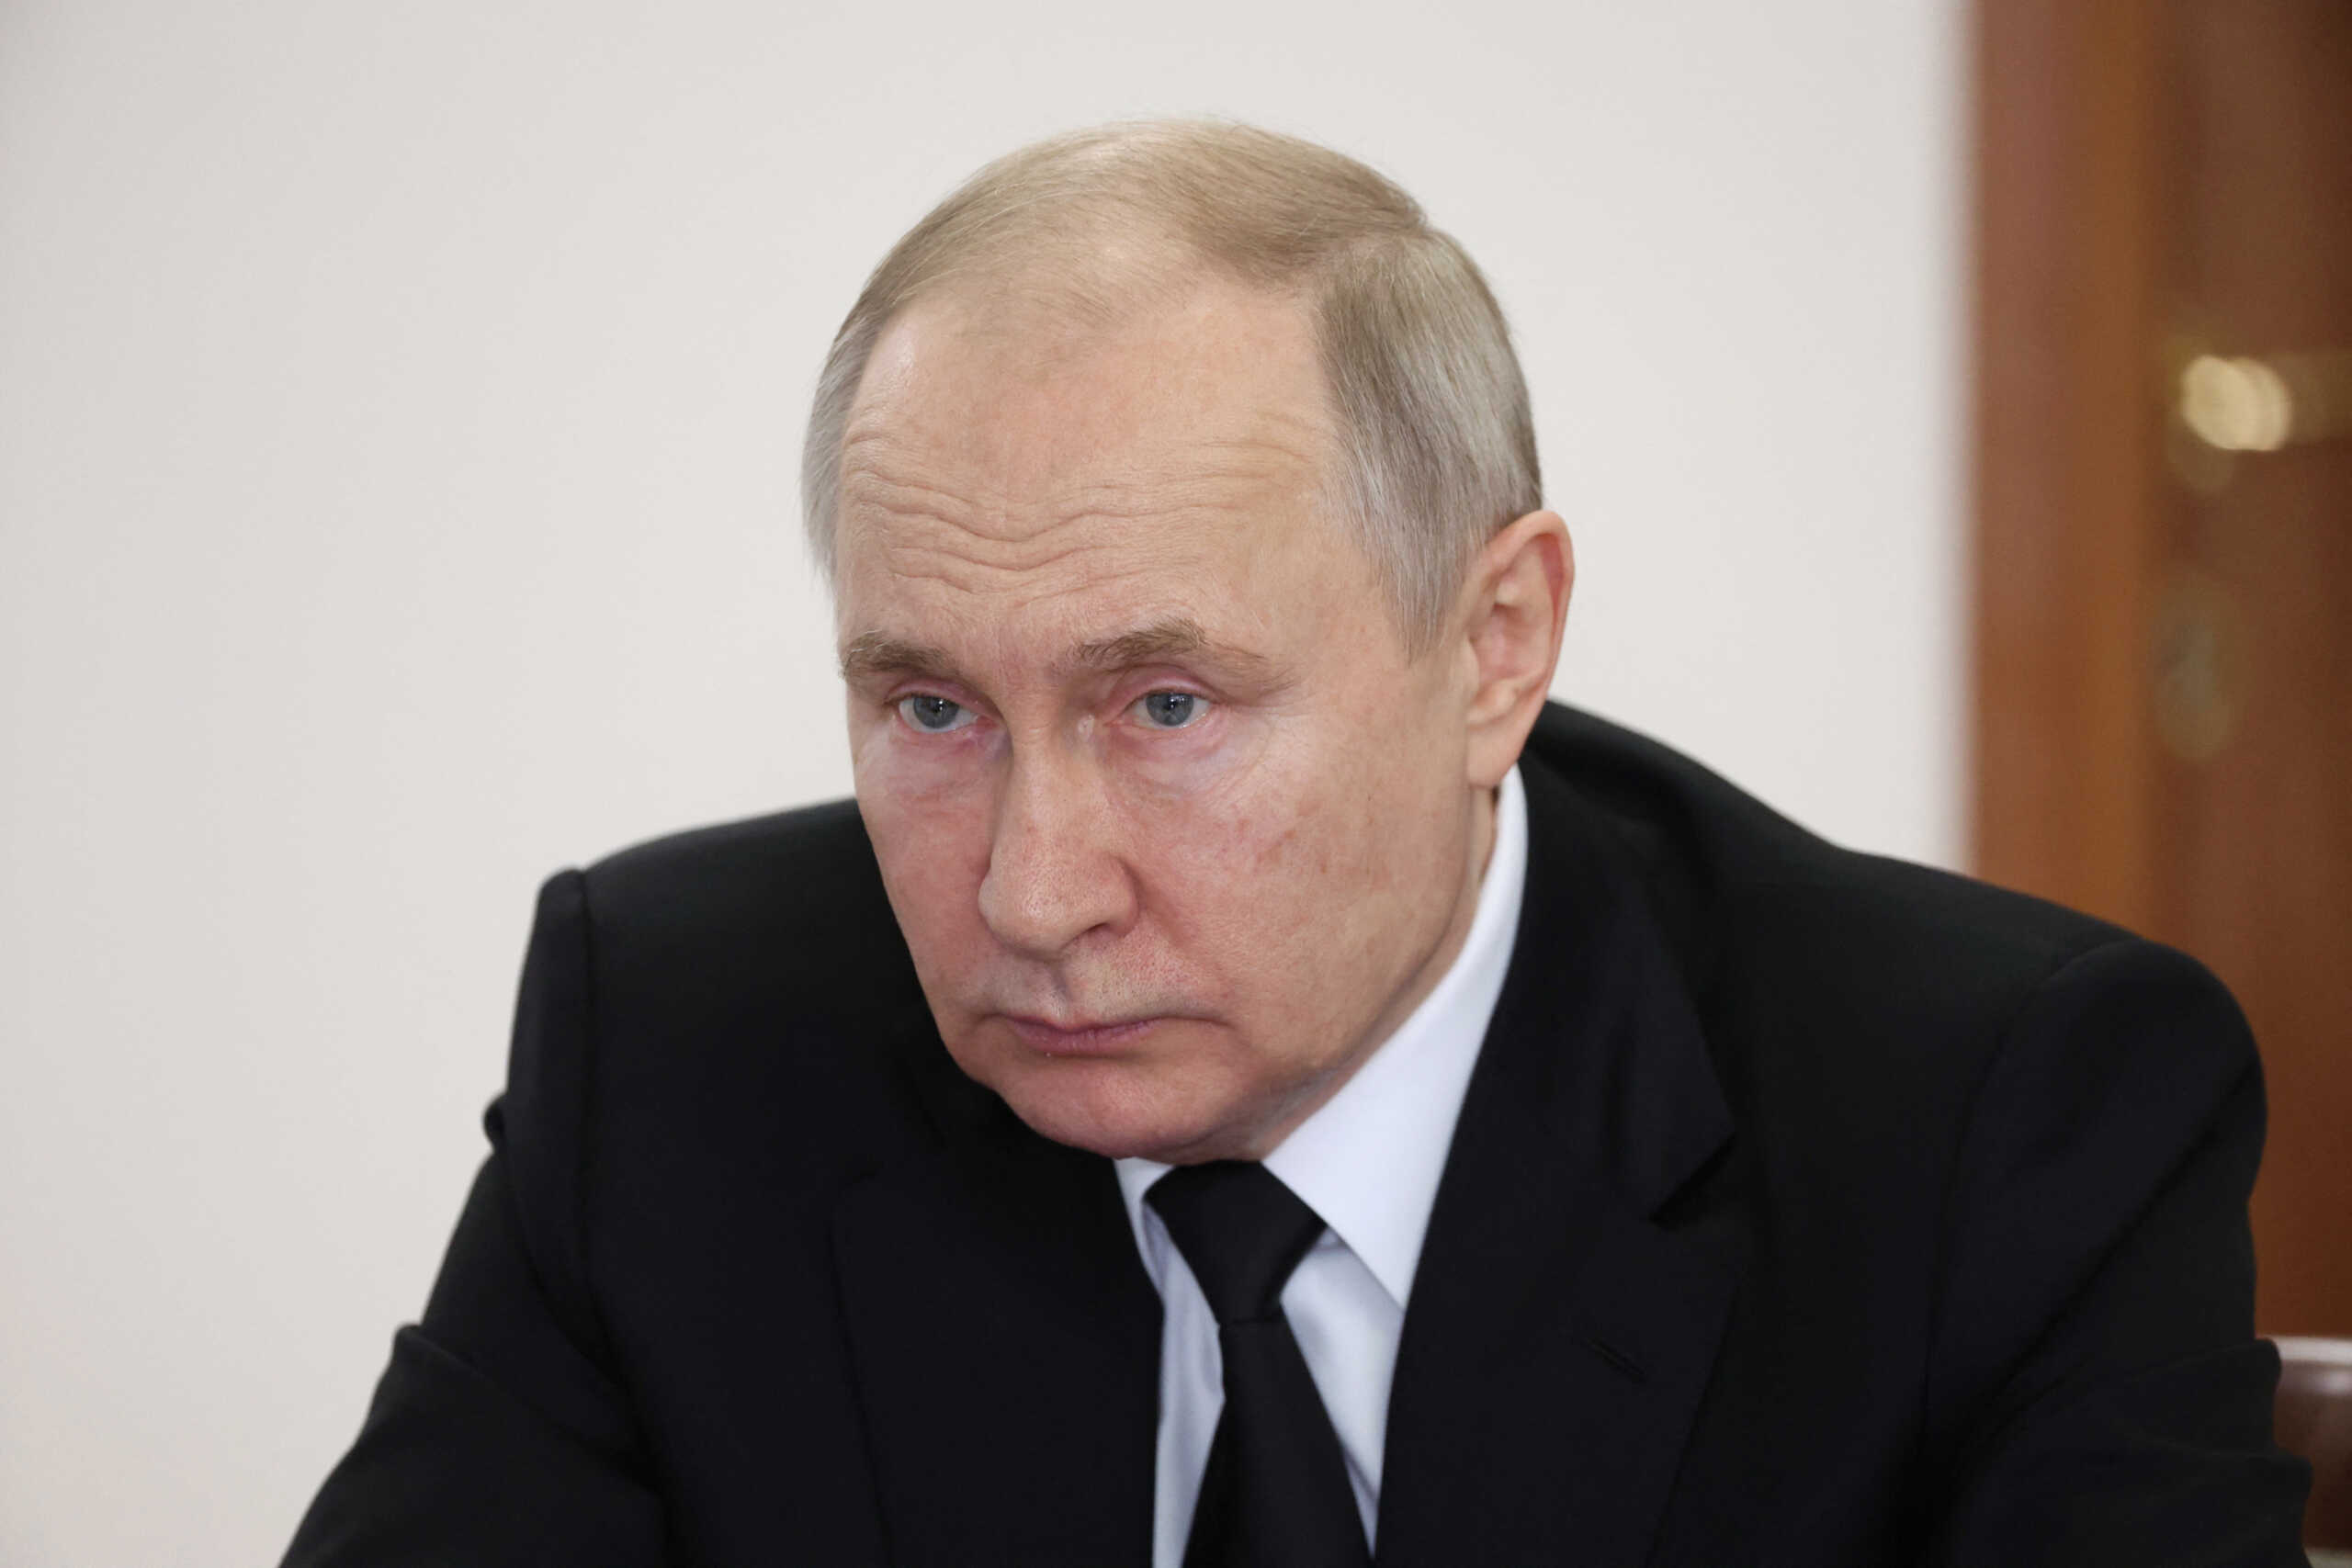 Κρεμλίνο: Ο Πούτιν είναι «ανοικτός» σε επαφές με τον καγκελάριο Σολτς